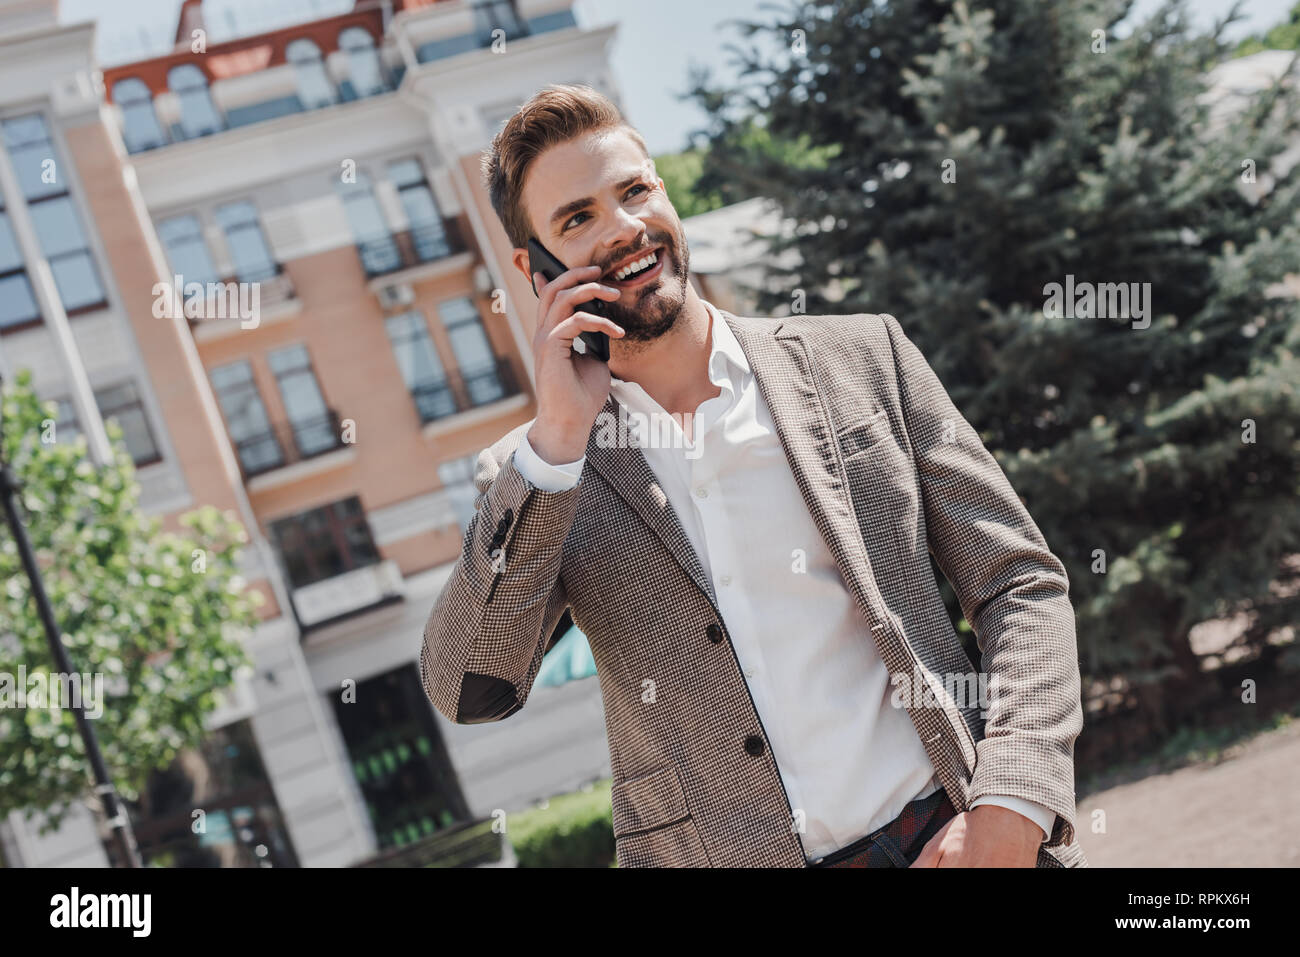 Portrait Of Happy Geschäftsmann Walking im Freien mit Handy. Mann mit Handy. Glückliche Menschen sprechen. Unternehmer im Freien mit Telefon. Er trägt smart casual Outfit der braunen Sakko und weißem T-Shirt. Stockfoto